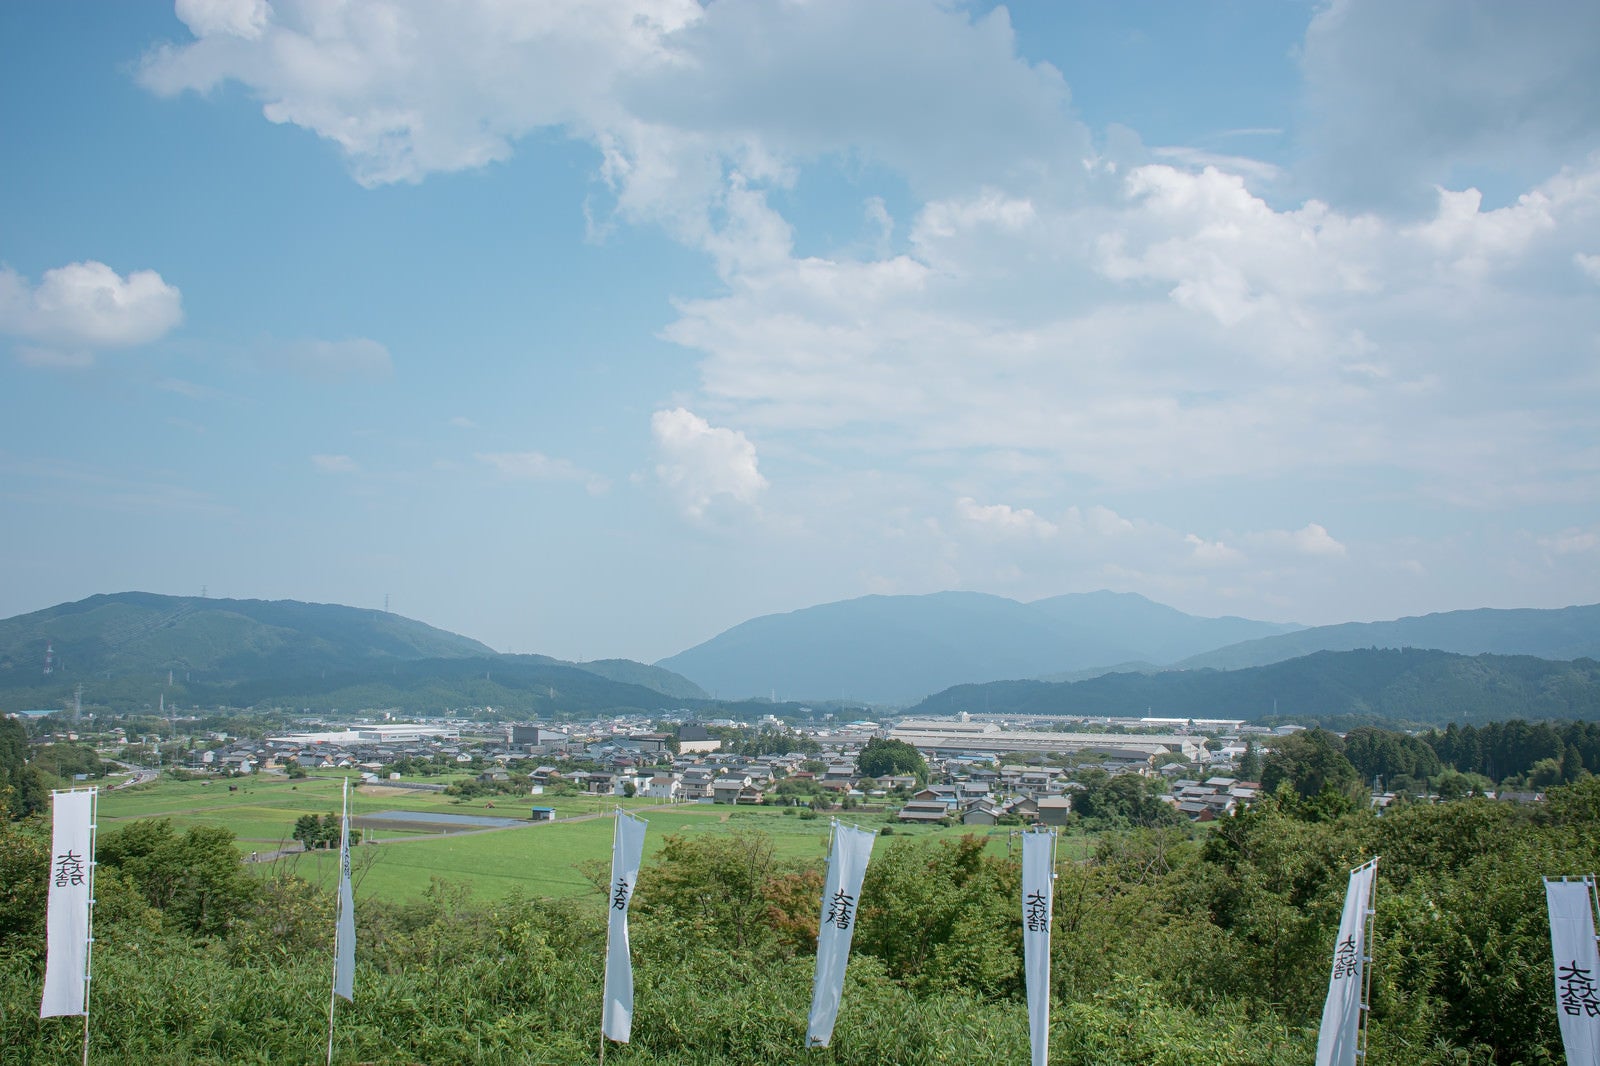 「笹尾山展望デッキから見える現在の関ケ原の様子」の写真